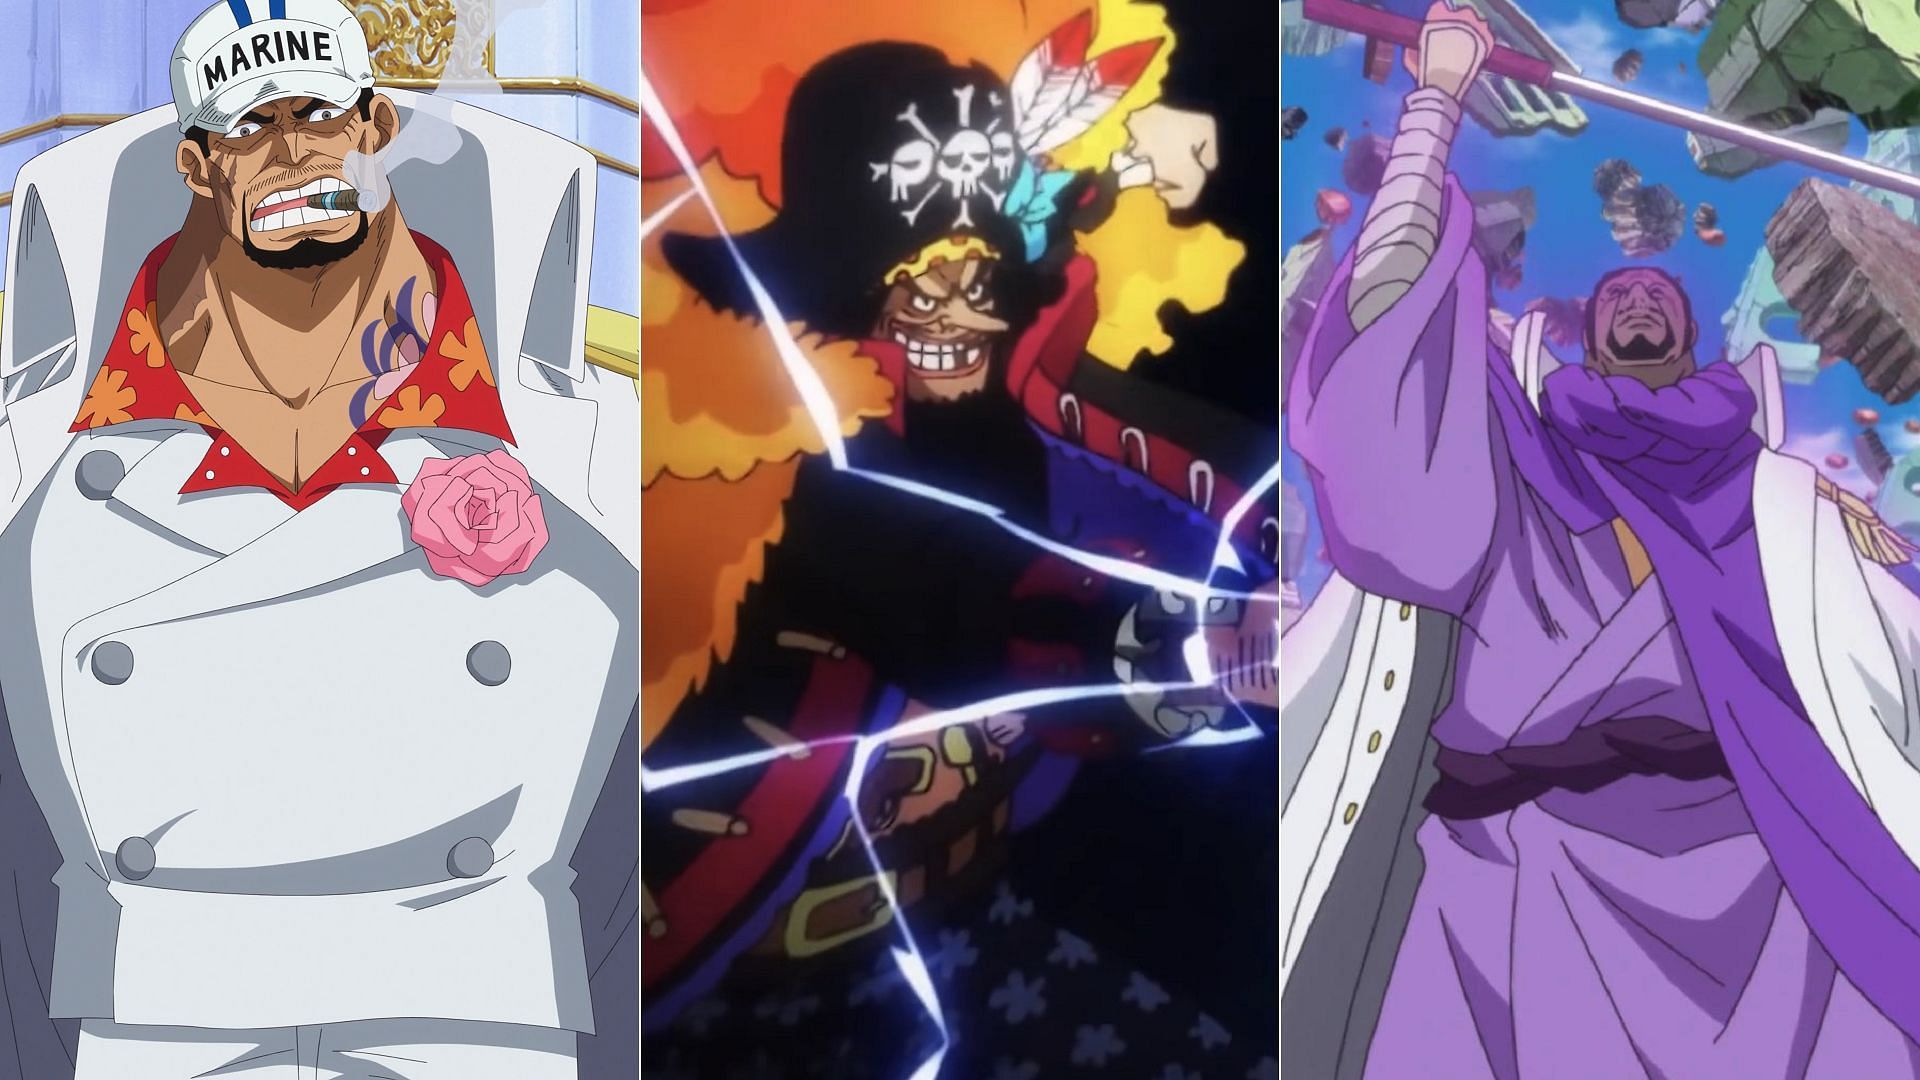 Akainu, Blackbeard, and Fujitora (Image via Toei Animation, One Piece)